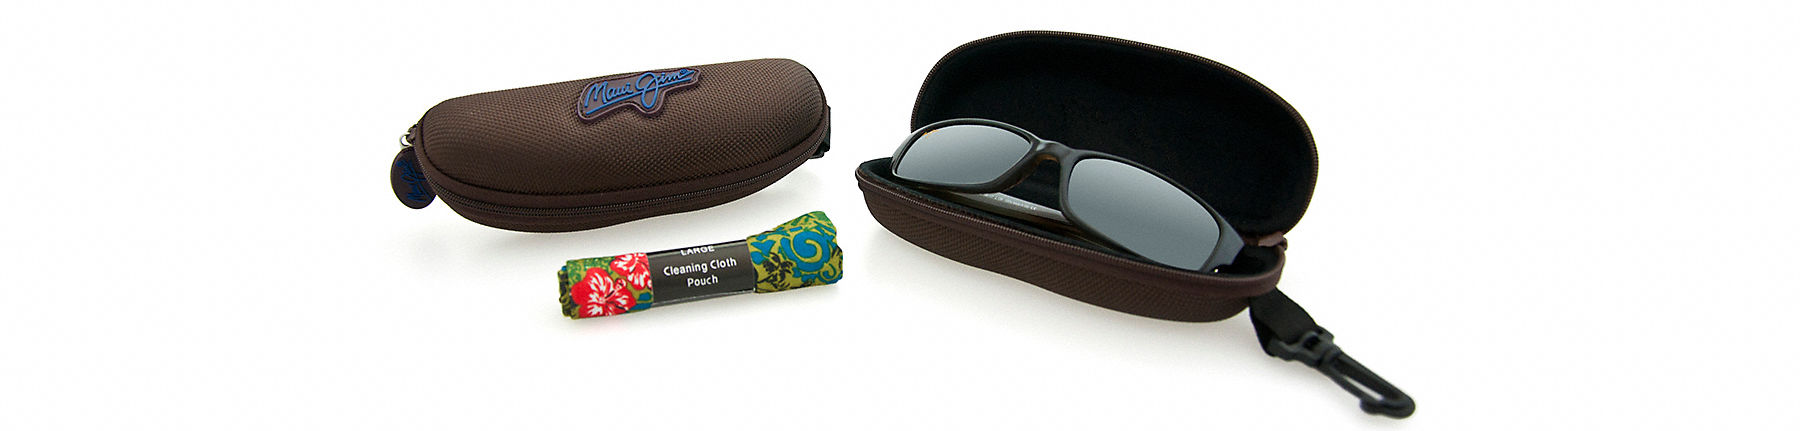 custodia per occhiali da sole sportivi color marrone aperta con occhiali da sole al suo interno accanto ad un sacchetto contenente un panno di pulizia